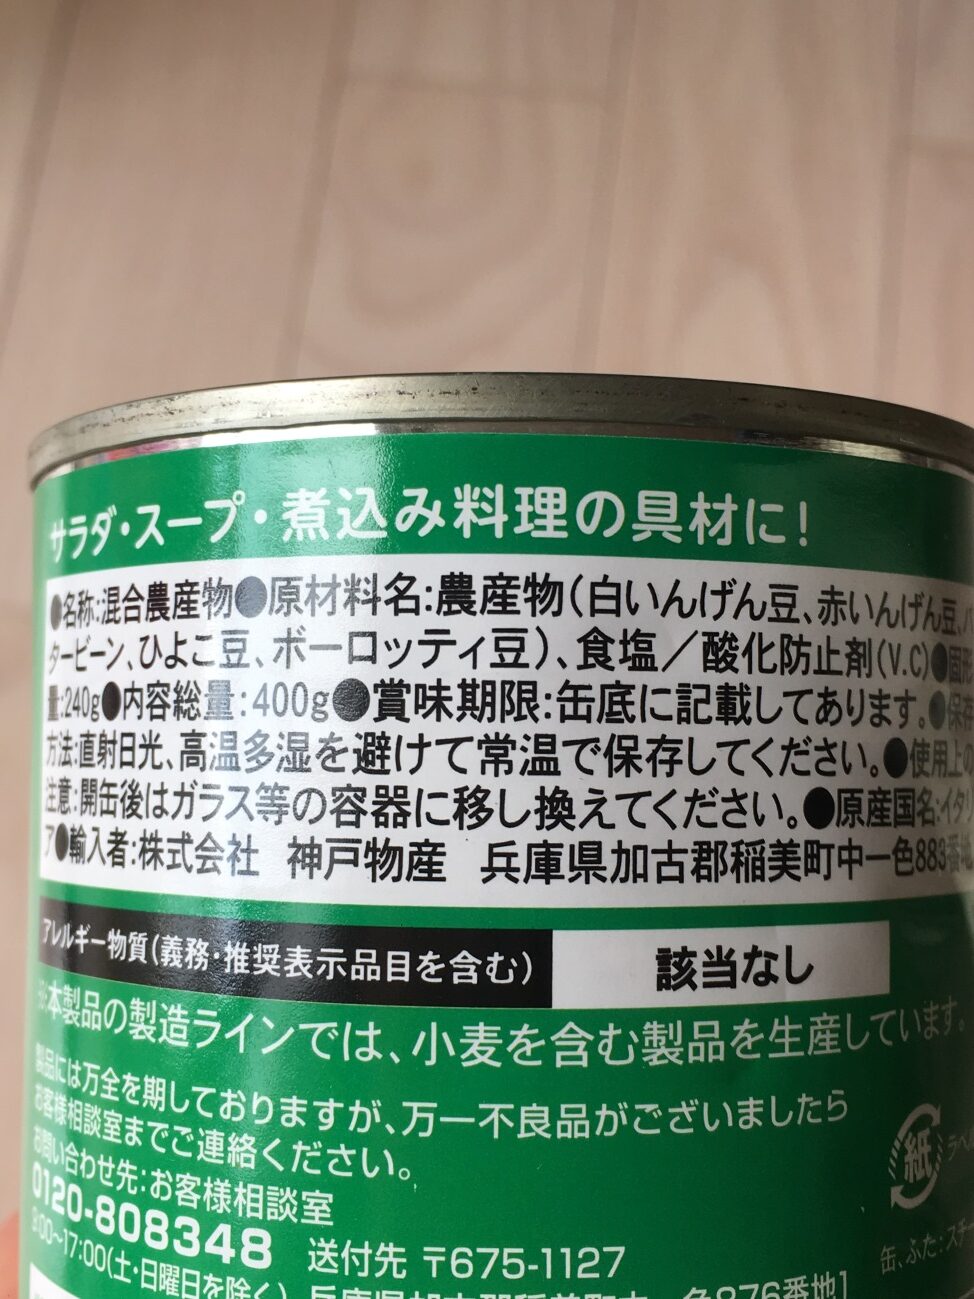 業務スーパーのミックスビーンズ缶詰の原材料名と原産国名の表記